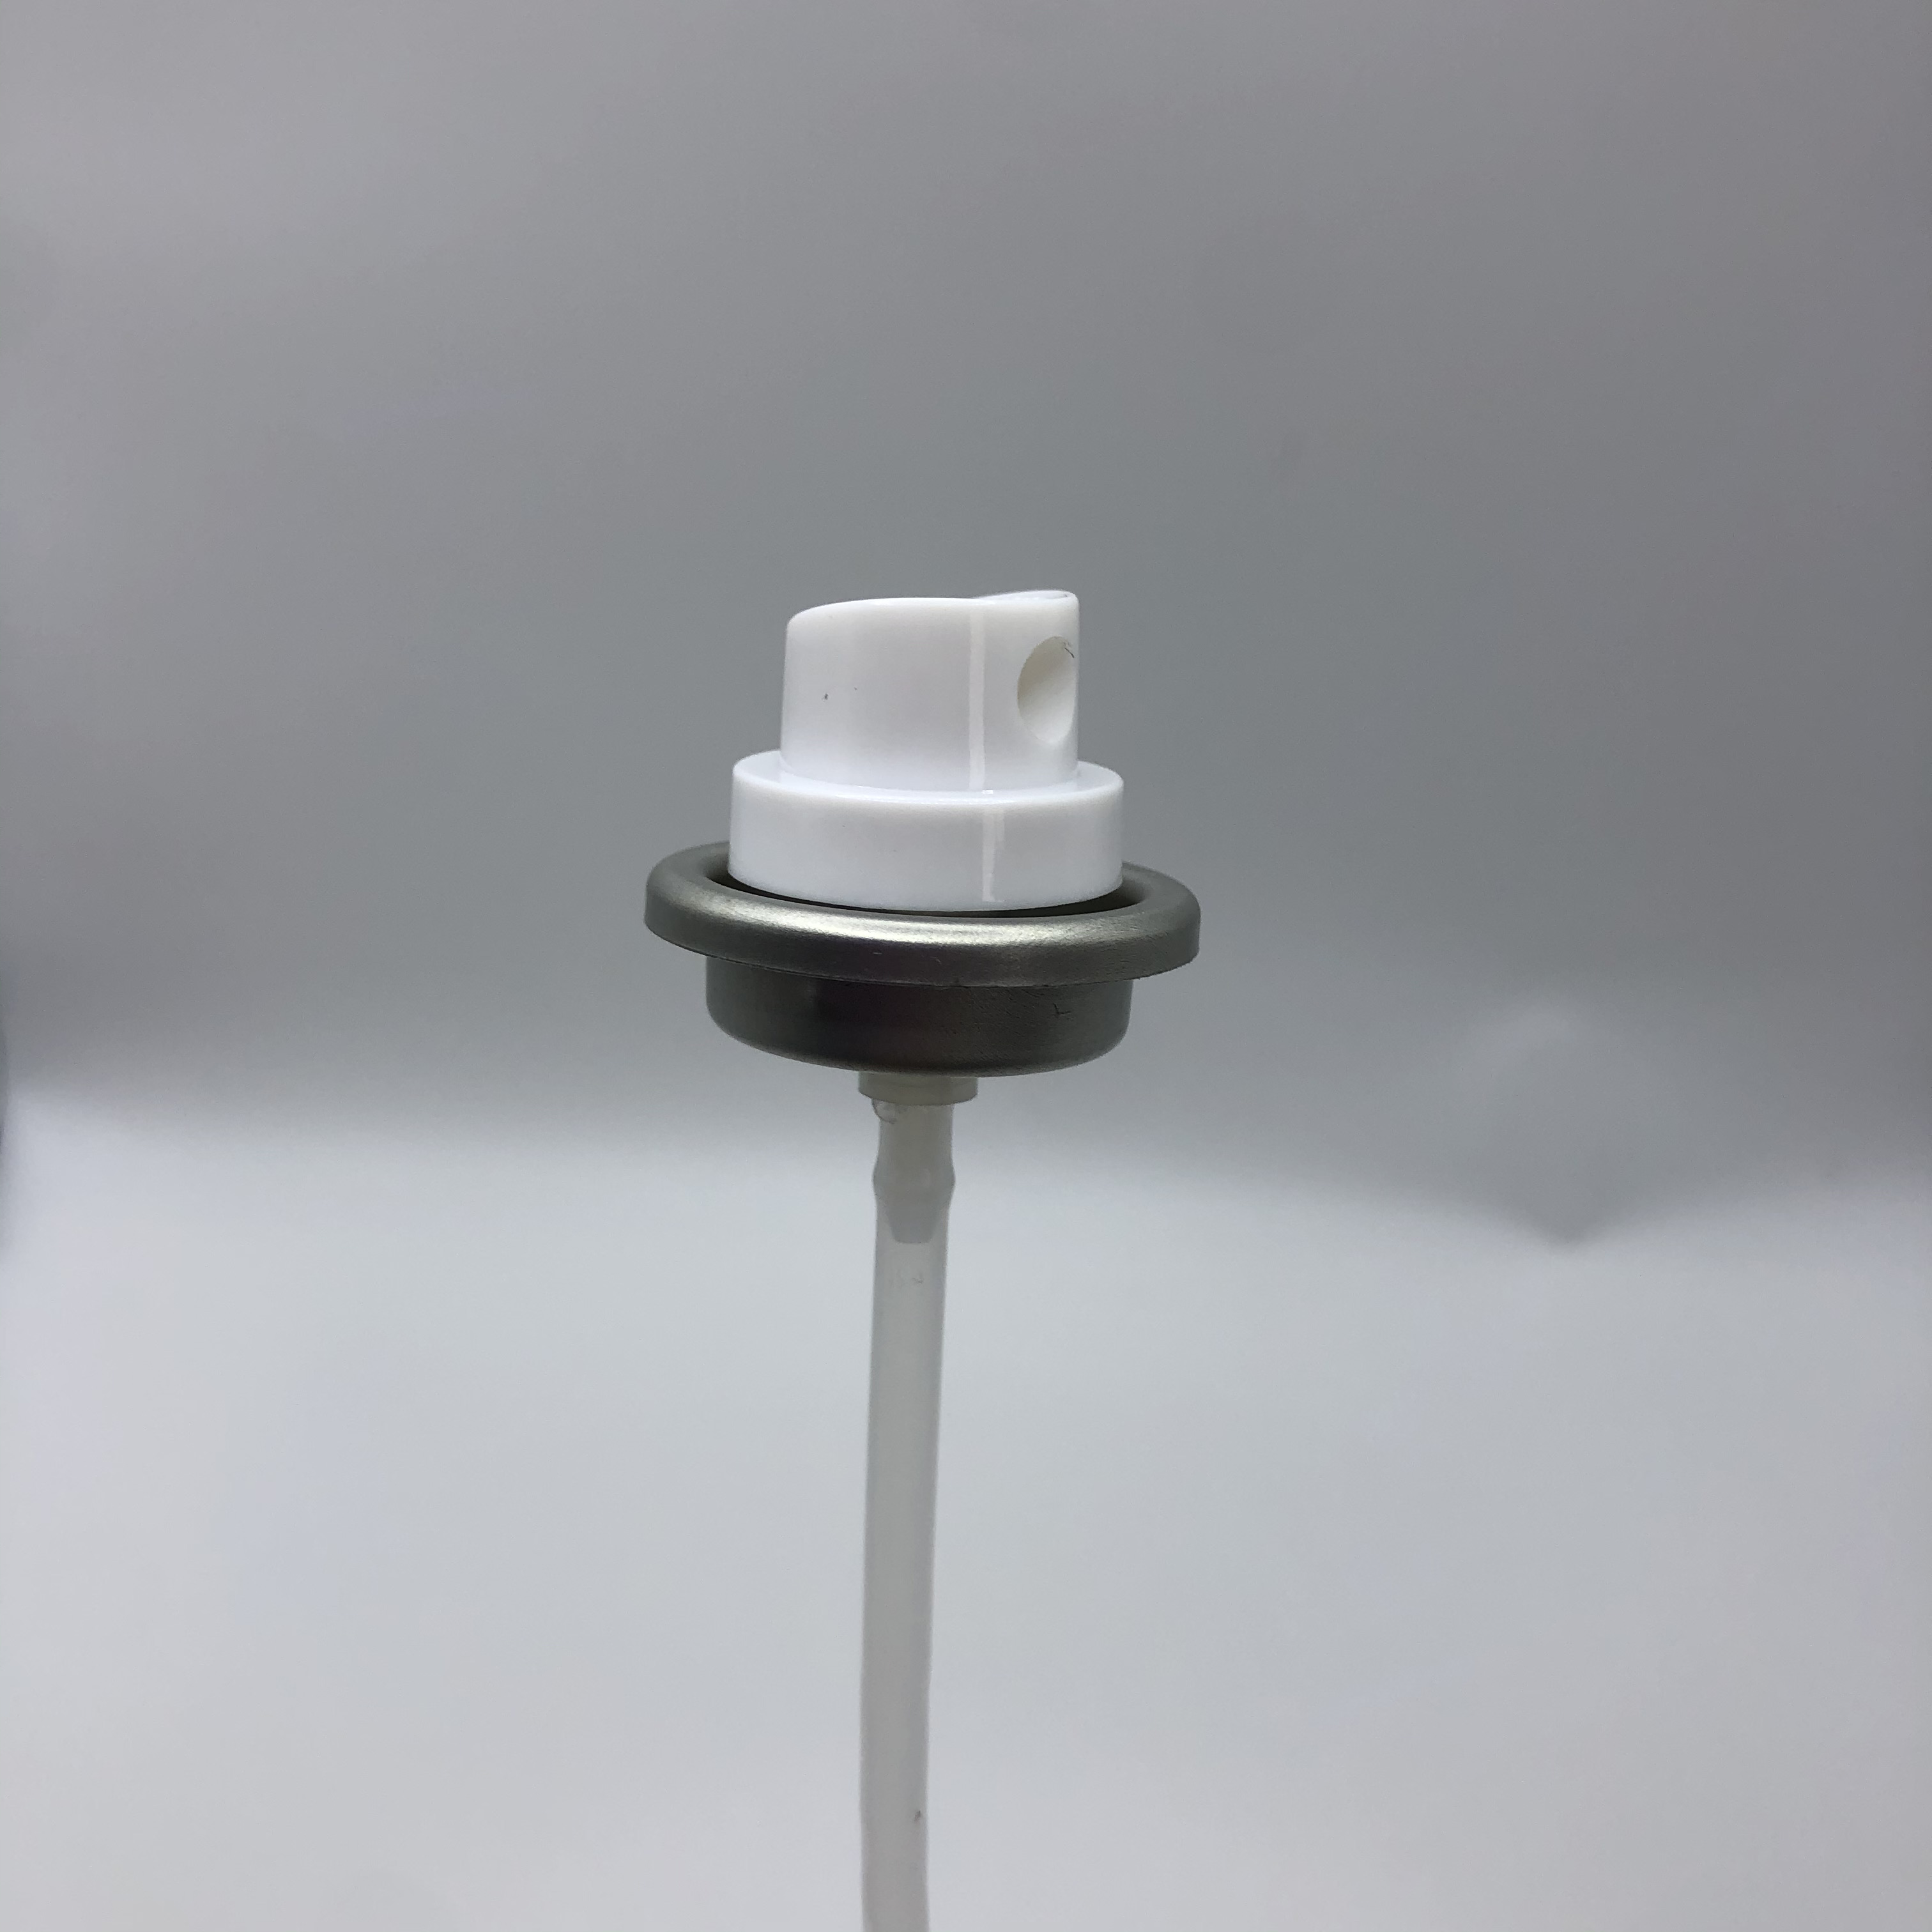 Kompaktní insekticidní aerosolový sprejový ventil na bázi oleje Přenosný a snadno použitelný, ideální na cesty